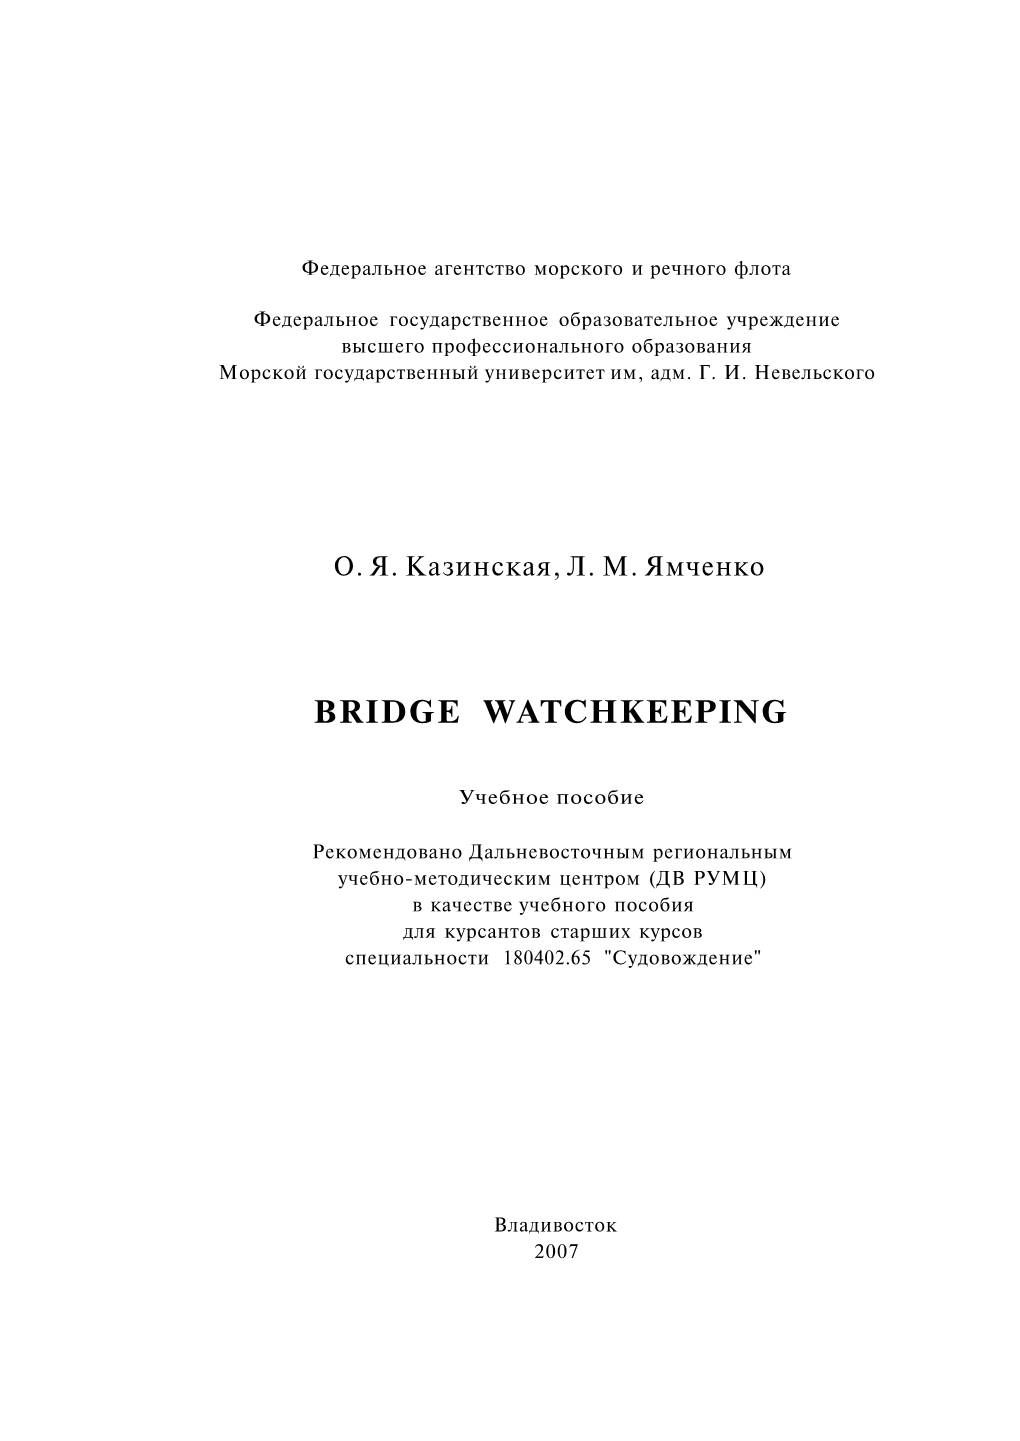 Bridge Watchkeeping